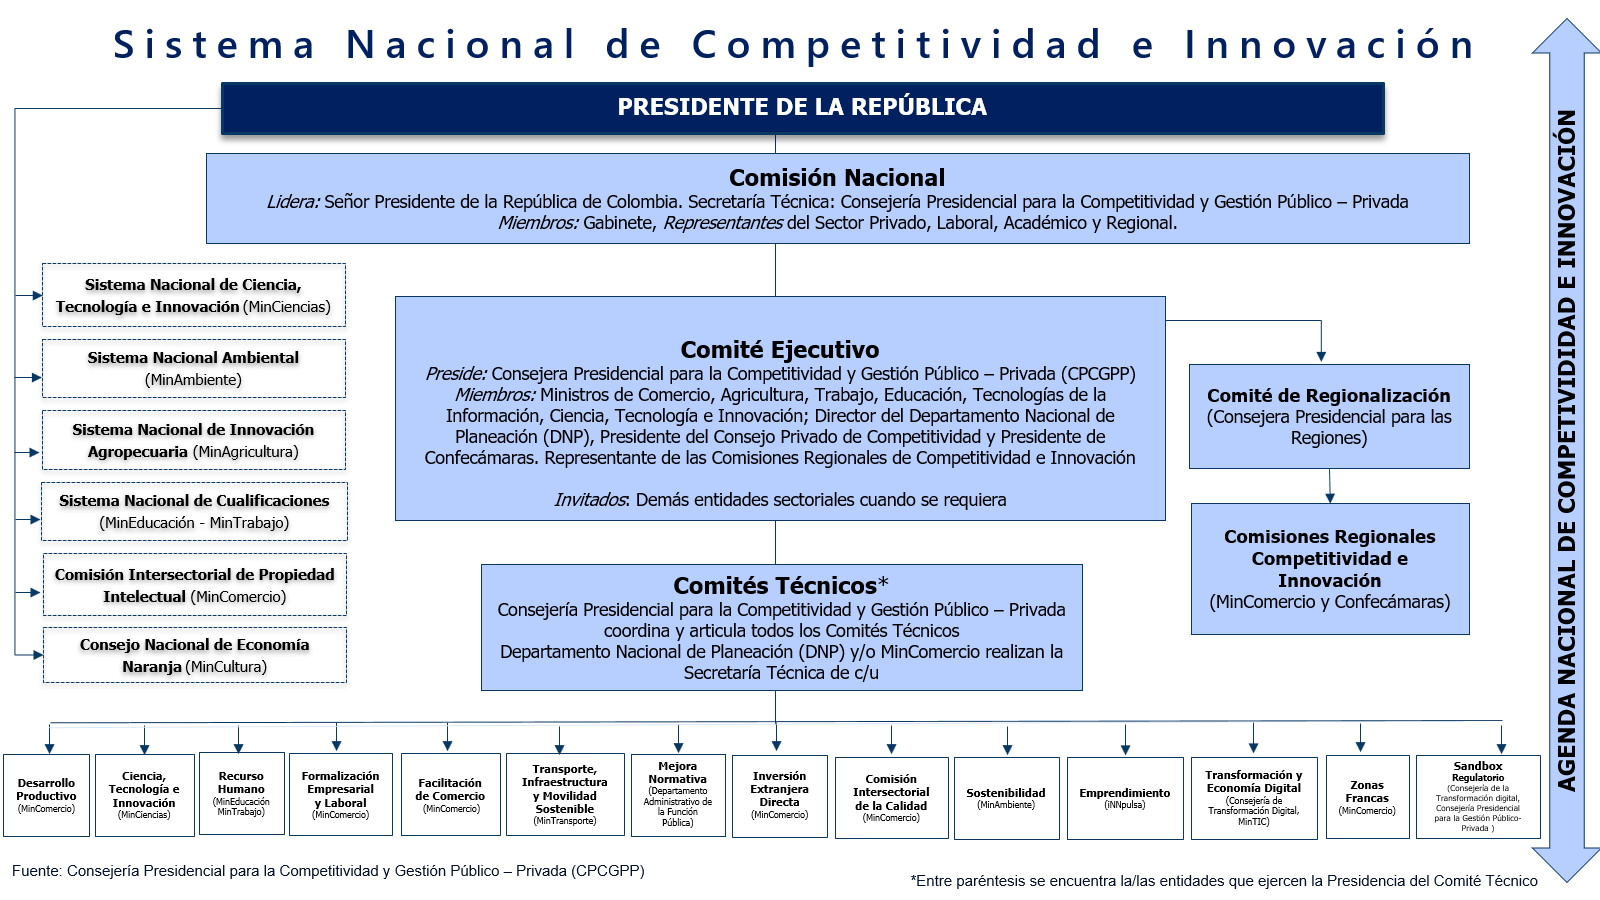 Sistema Nacional de Competitividad e Innovación